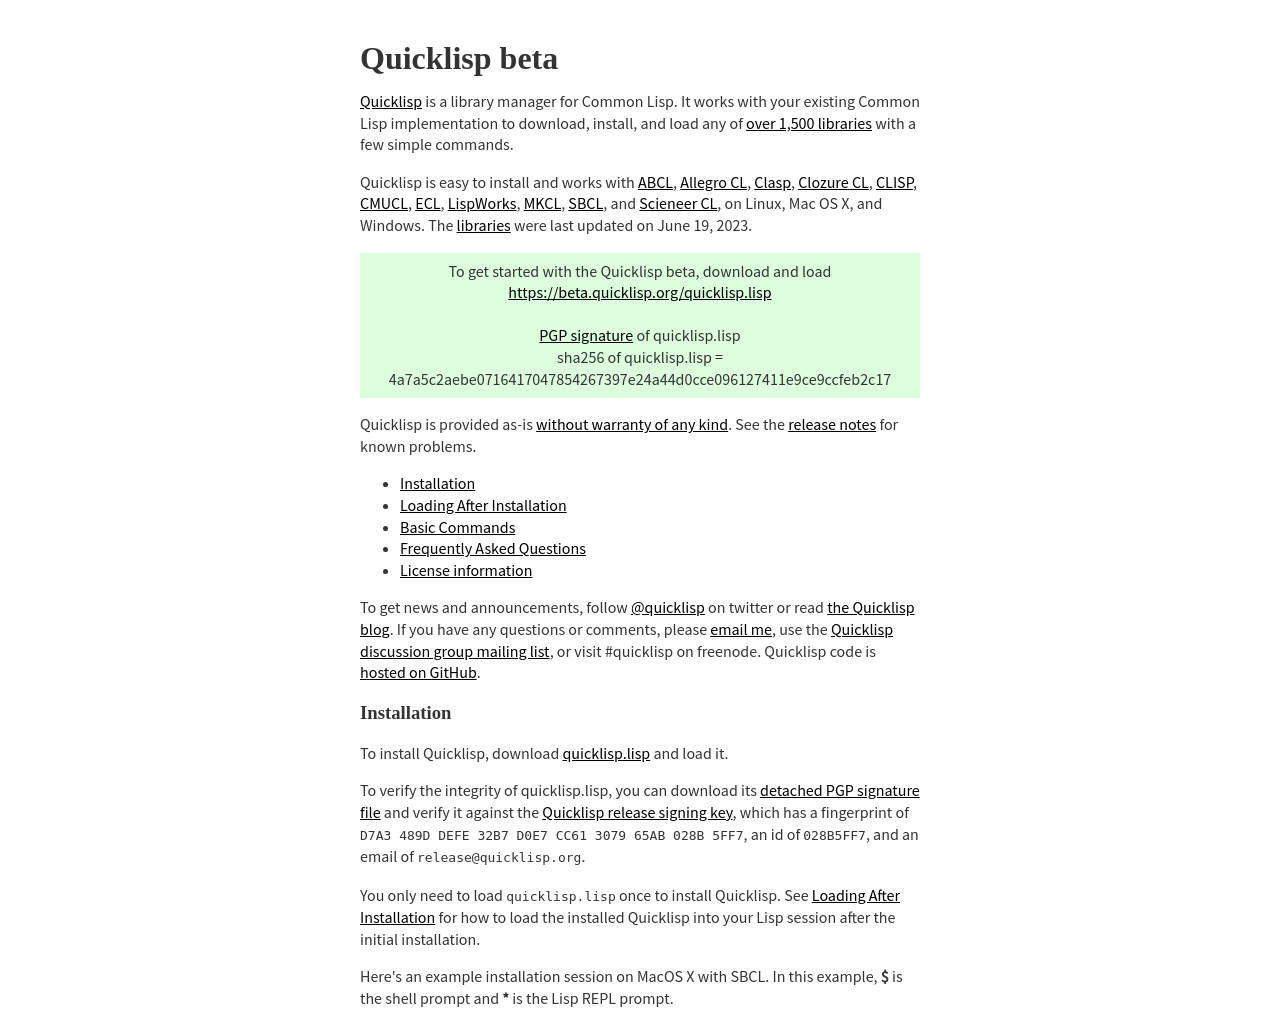 quicklisp.org